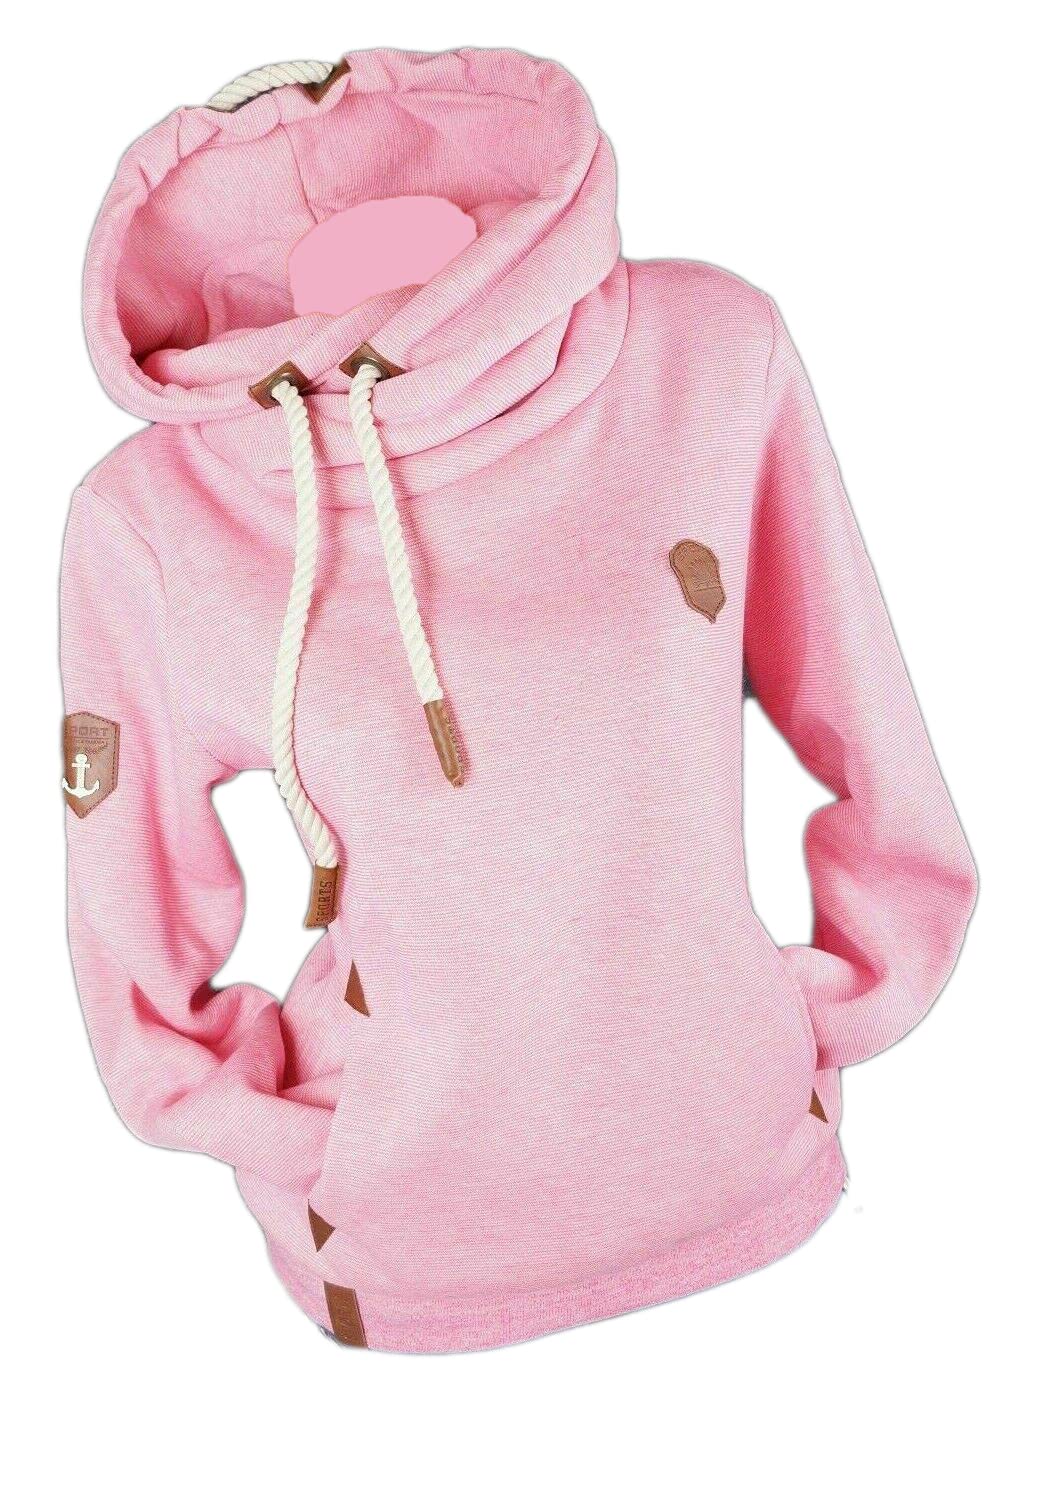 xy Damen Hoodie Kapuzenpullover Sweatshirt Warmer Fleece Pulli M L XL 2XL 3XL (Pink, 3XL, 3X_l)